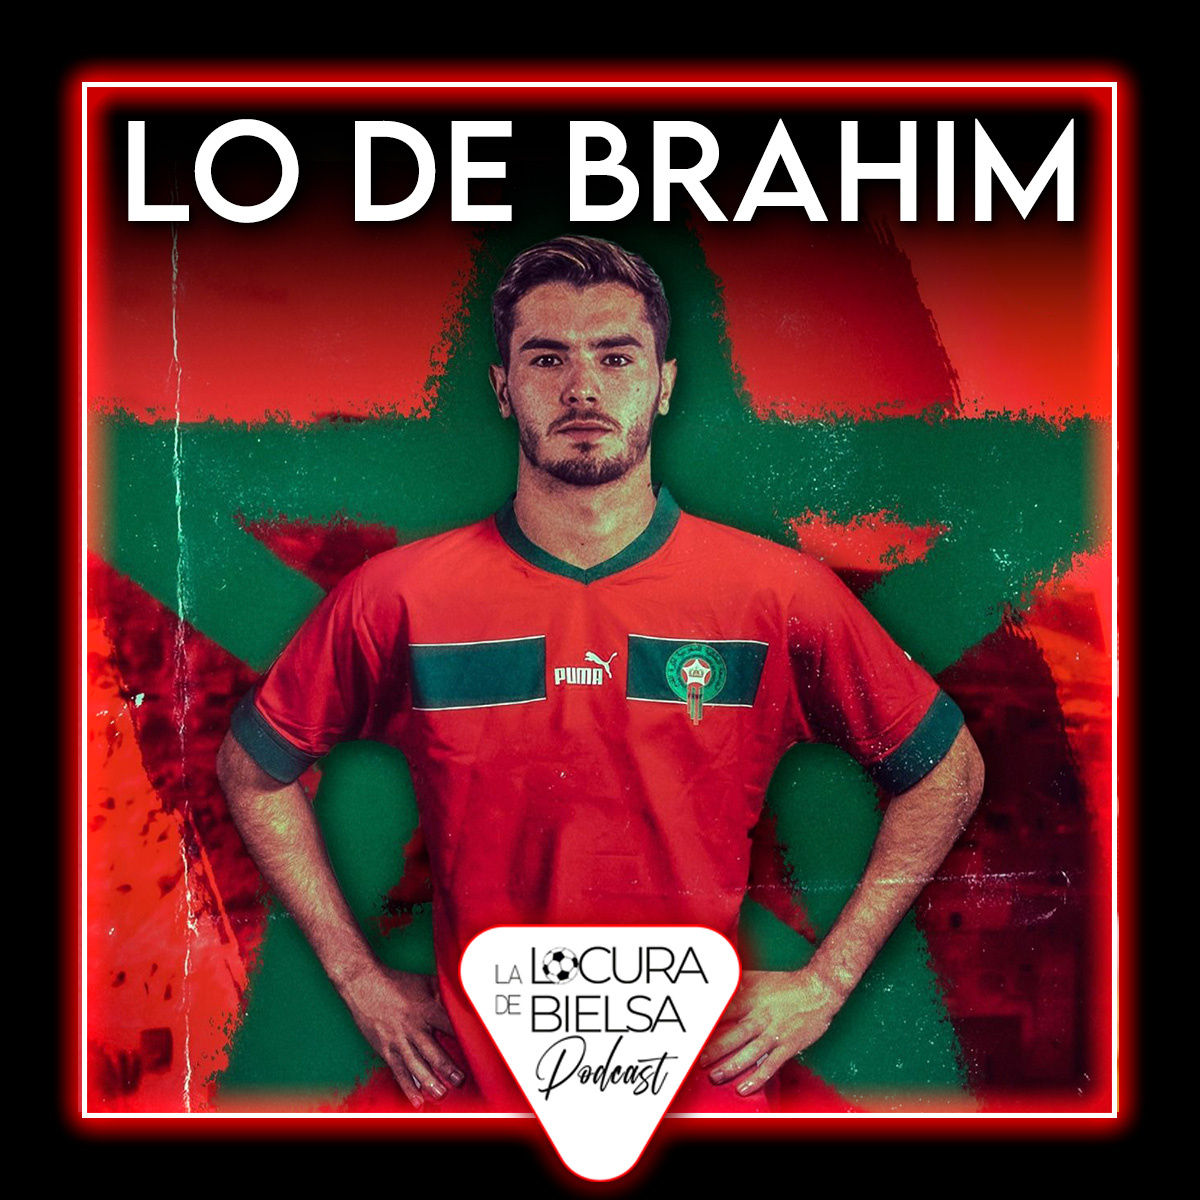 Brahim escoge a Marruecos locura de Bielsa podcast futbol